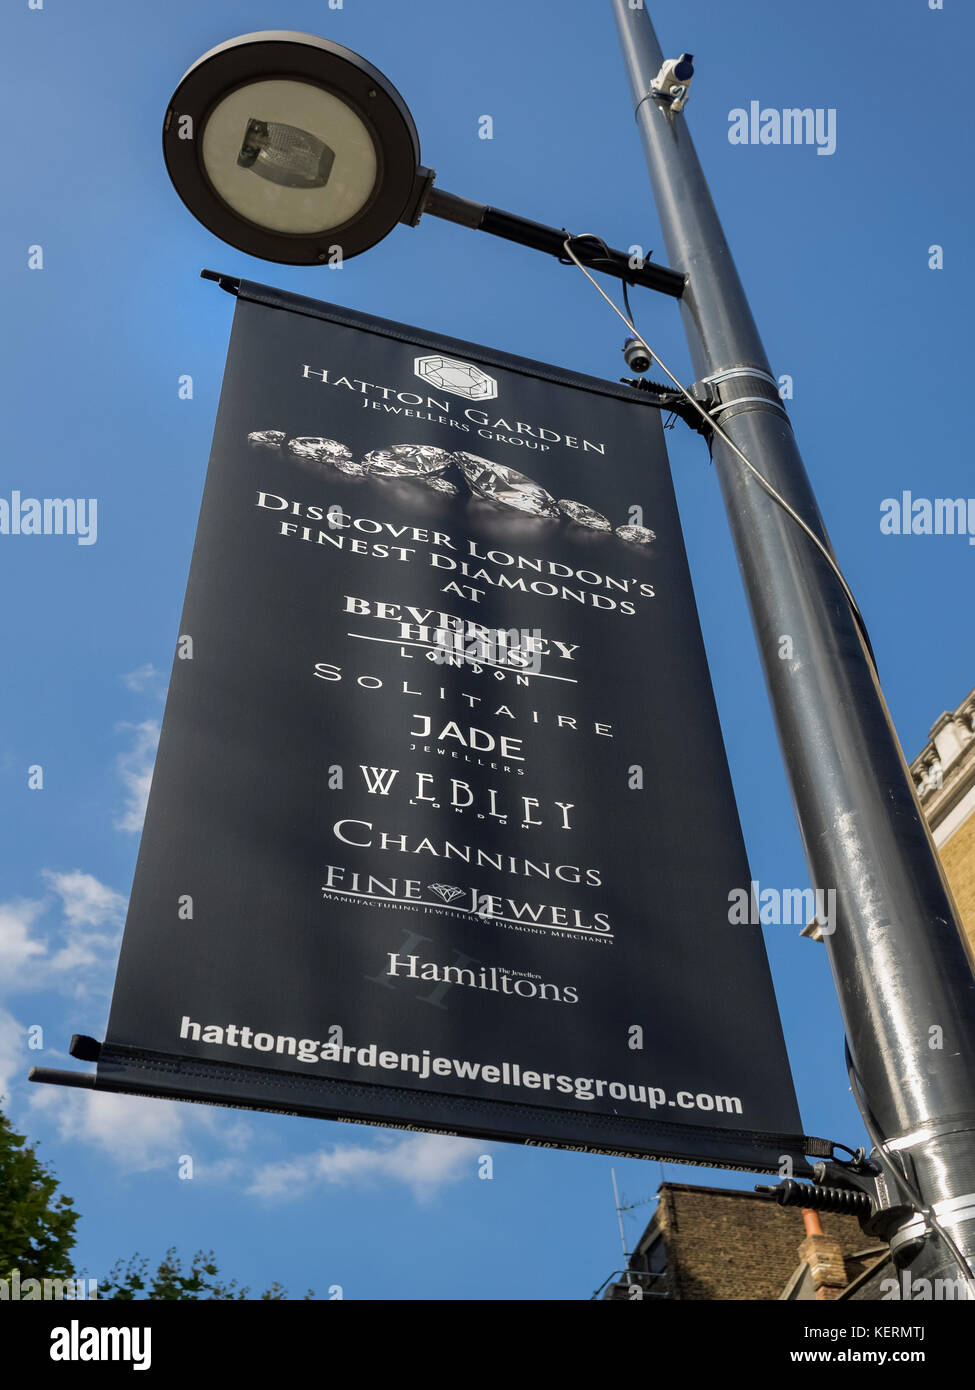 LONDRA, Regno Unito - 25 AGOSTO 2017: Banner pubblicitario su Hatton Garden, il quartiere dei gioielli di Londra Foto Stock